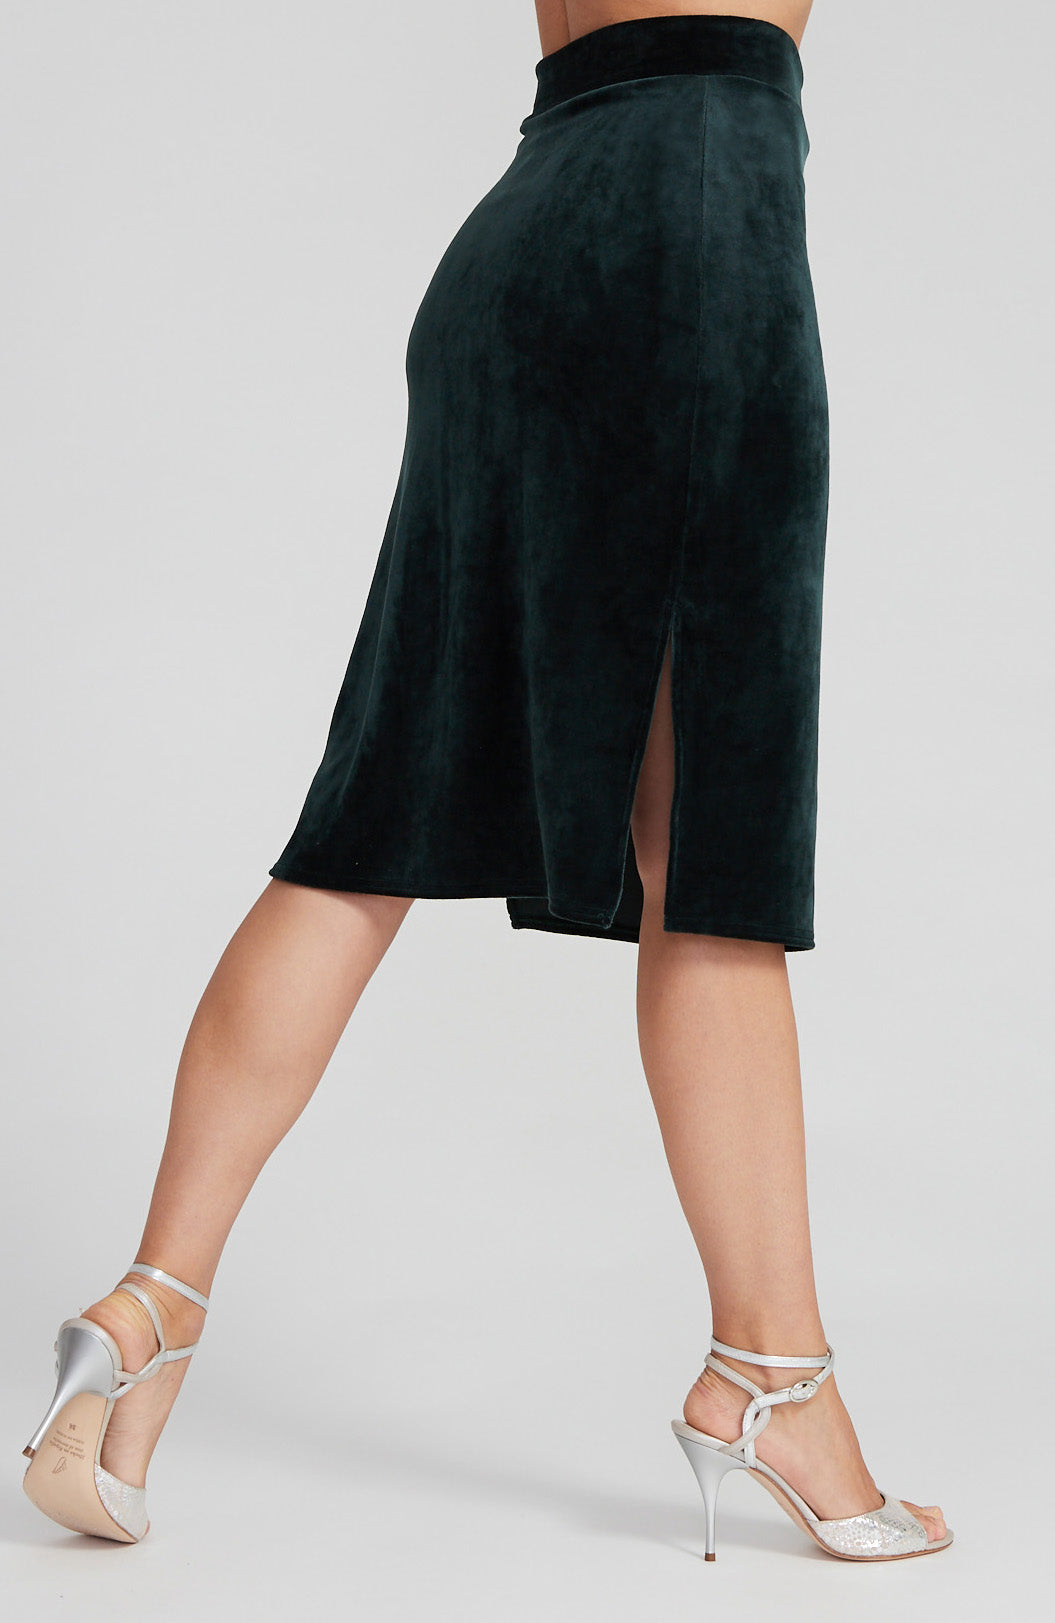 green velvet tango skirt with side slits